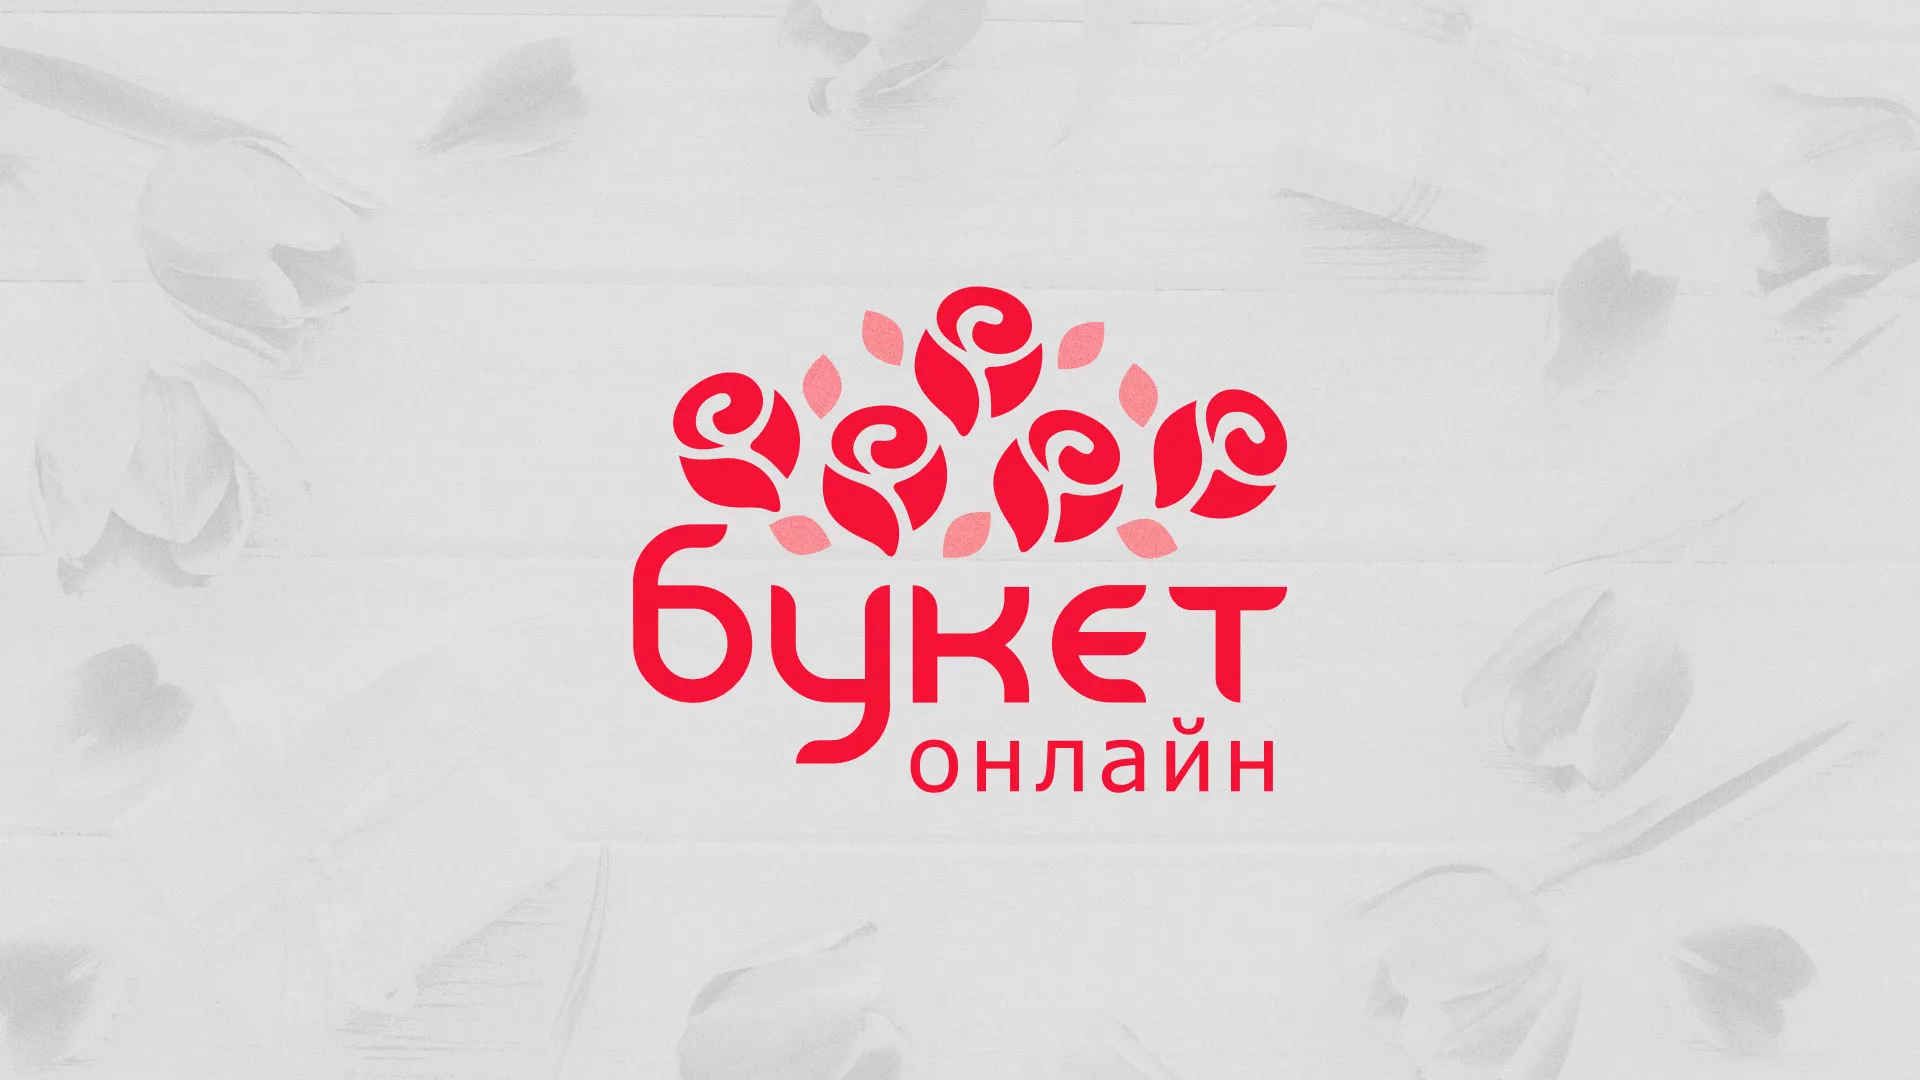 Создание интернет-магазина «Букет-онлайн» по цветам в Железногорске-Илимском